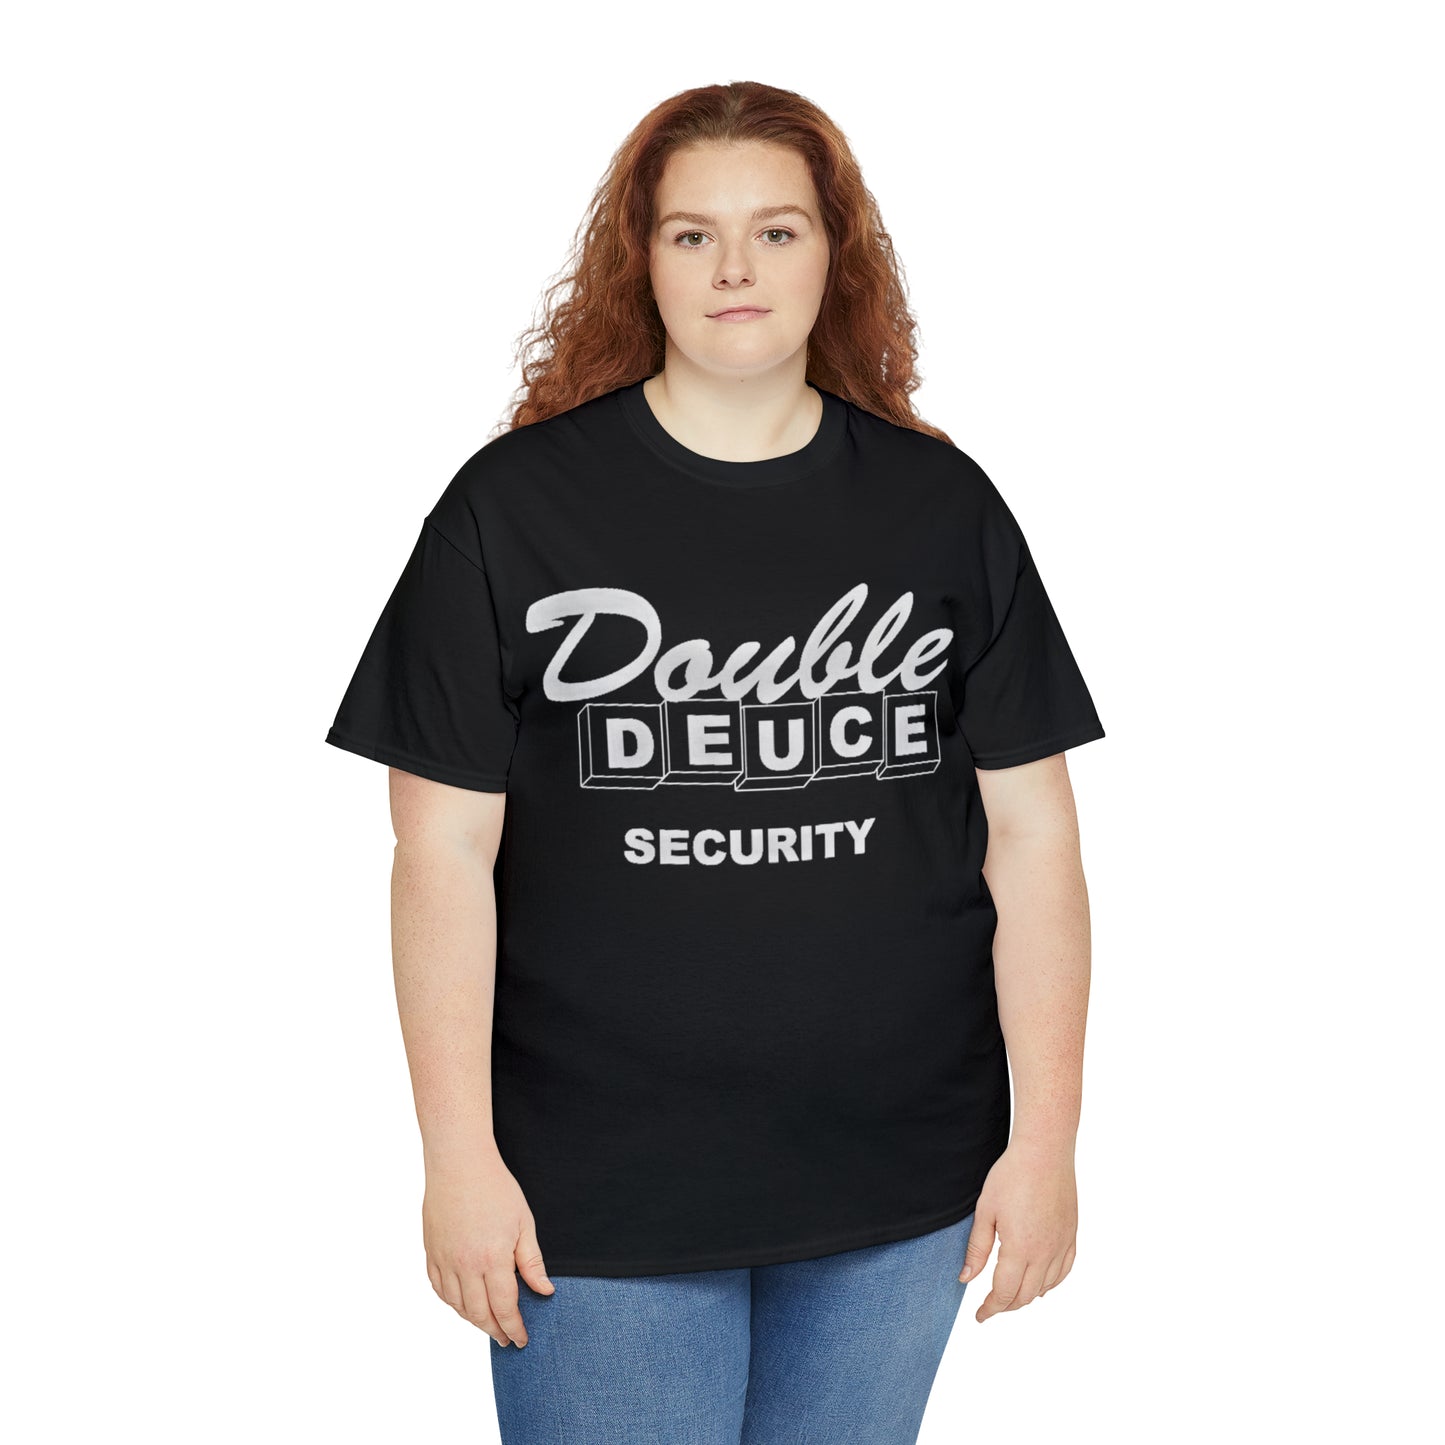 Double Deuce Security Be Nice Shirt